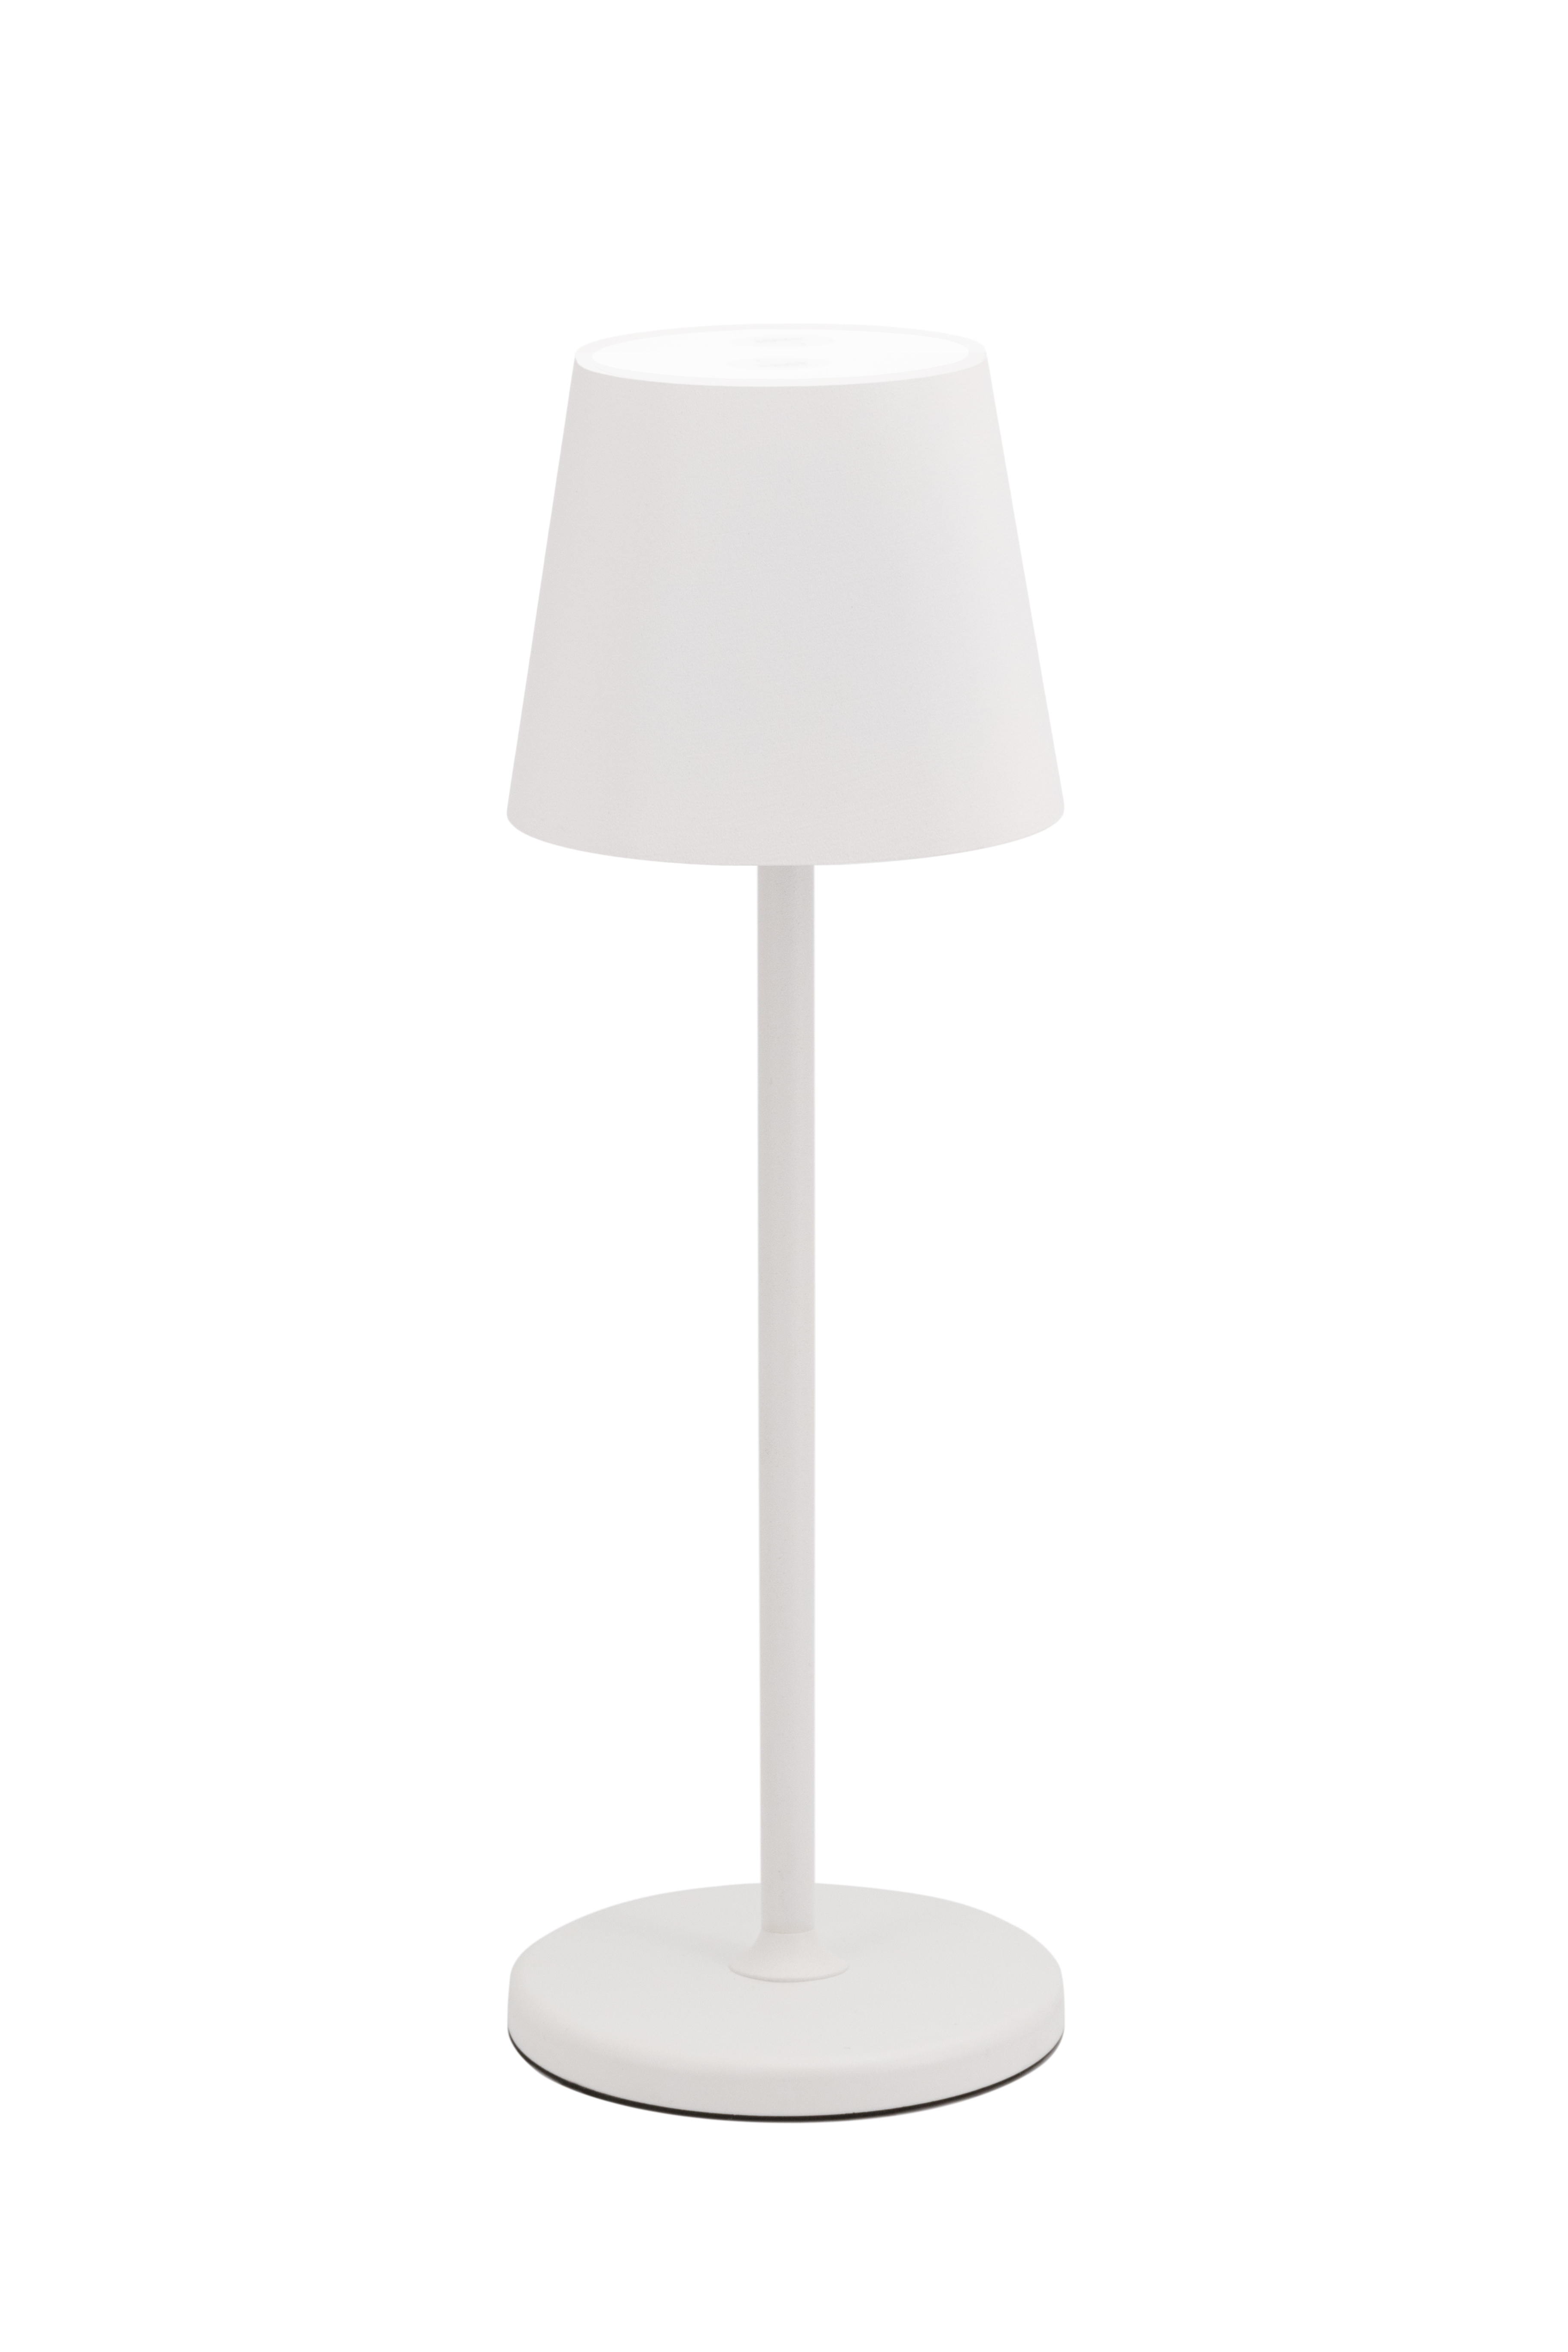 SECURIT Lampe de table FELINE LP-FE-WT blanc, batterie, dimmable